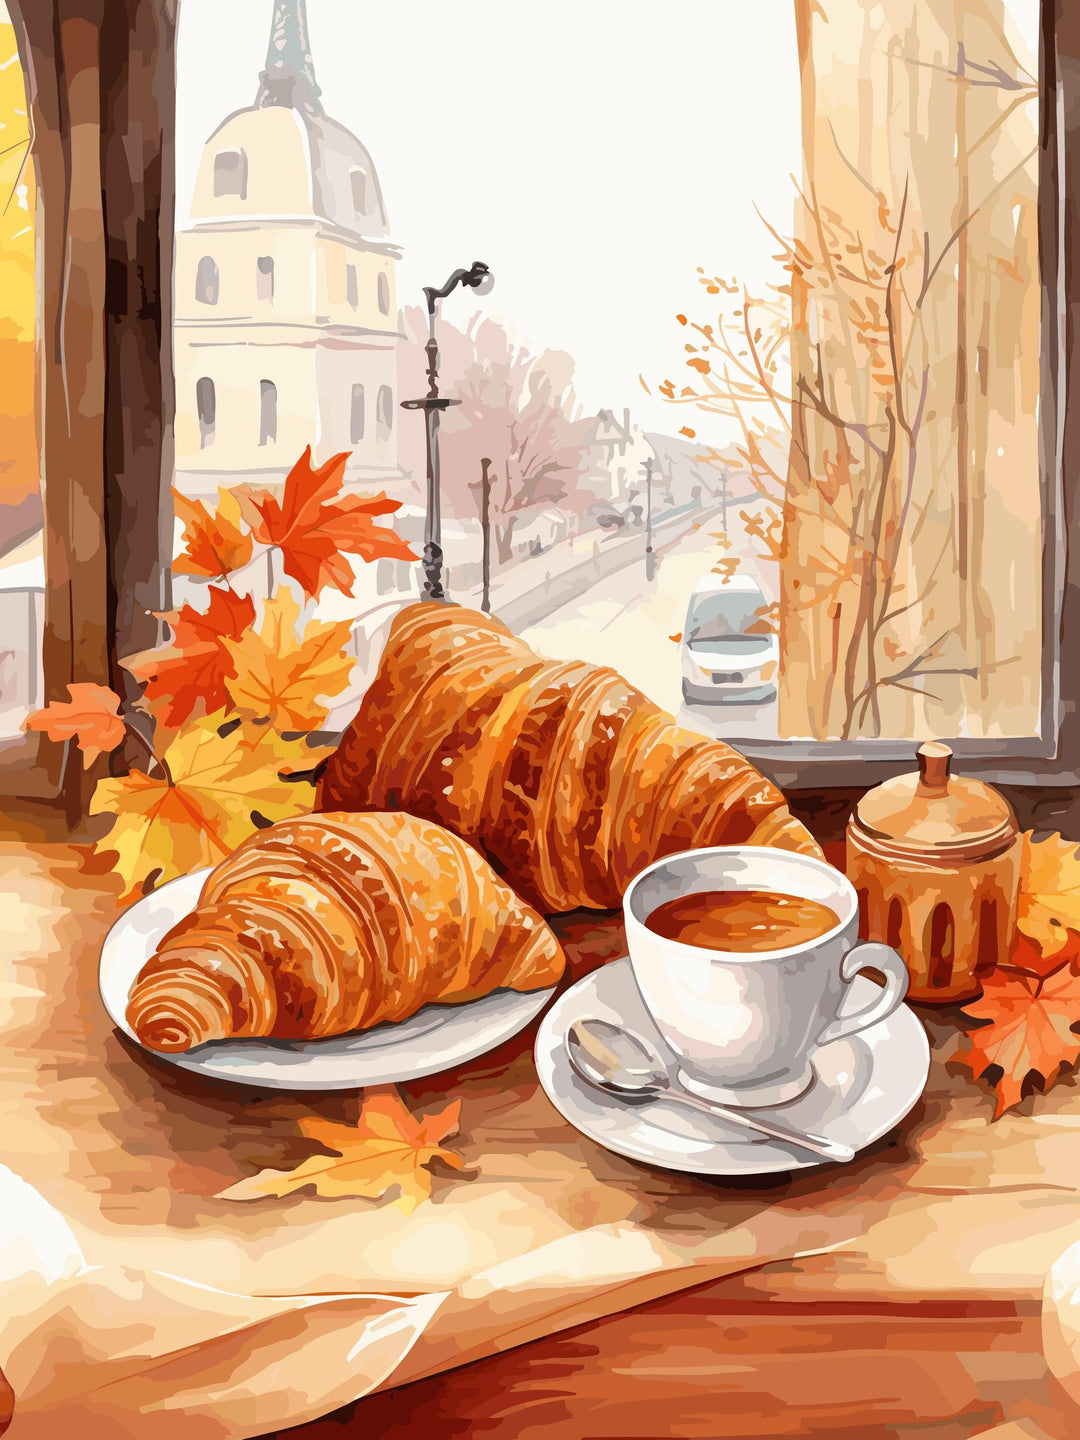 Französisches Frühstück_Golden Hour - Poster Herbst - Printree.ch goldene stunde, Herbst, Herbstfarben, herbstlich, kreative Kunst, Kunst, Kunstdruck, Poster